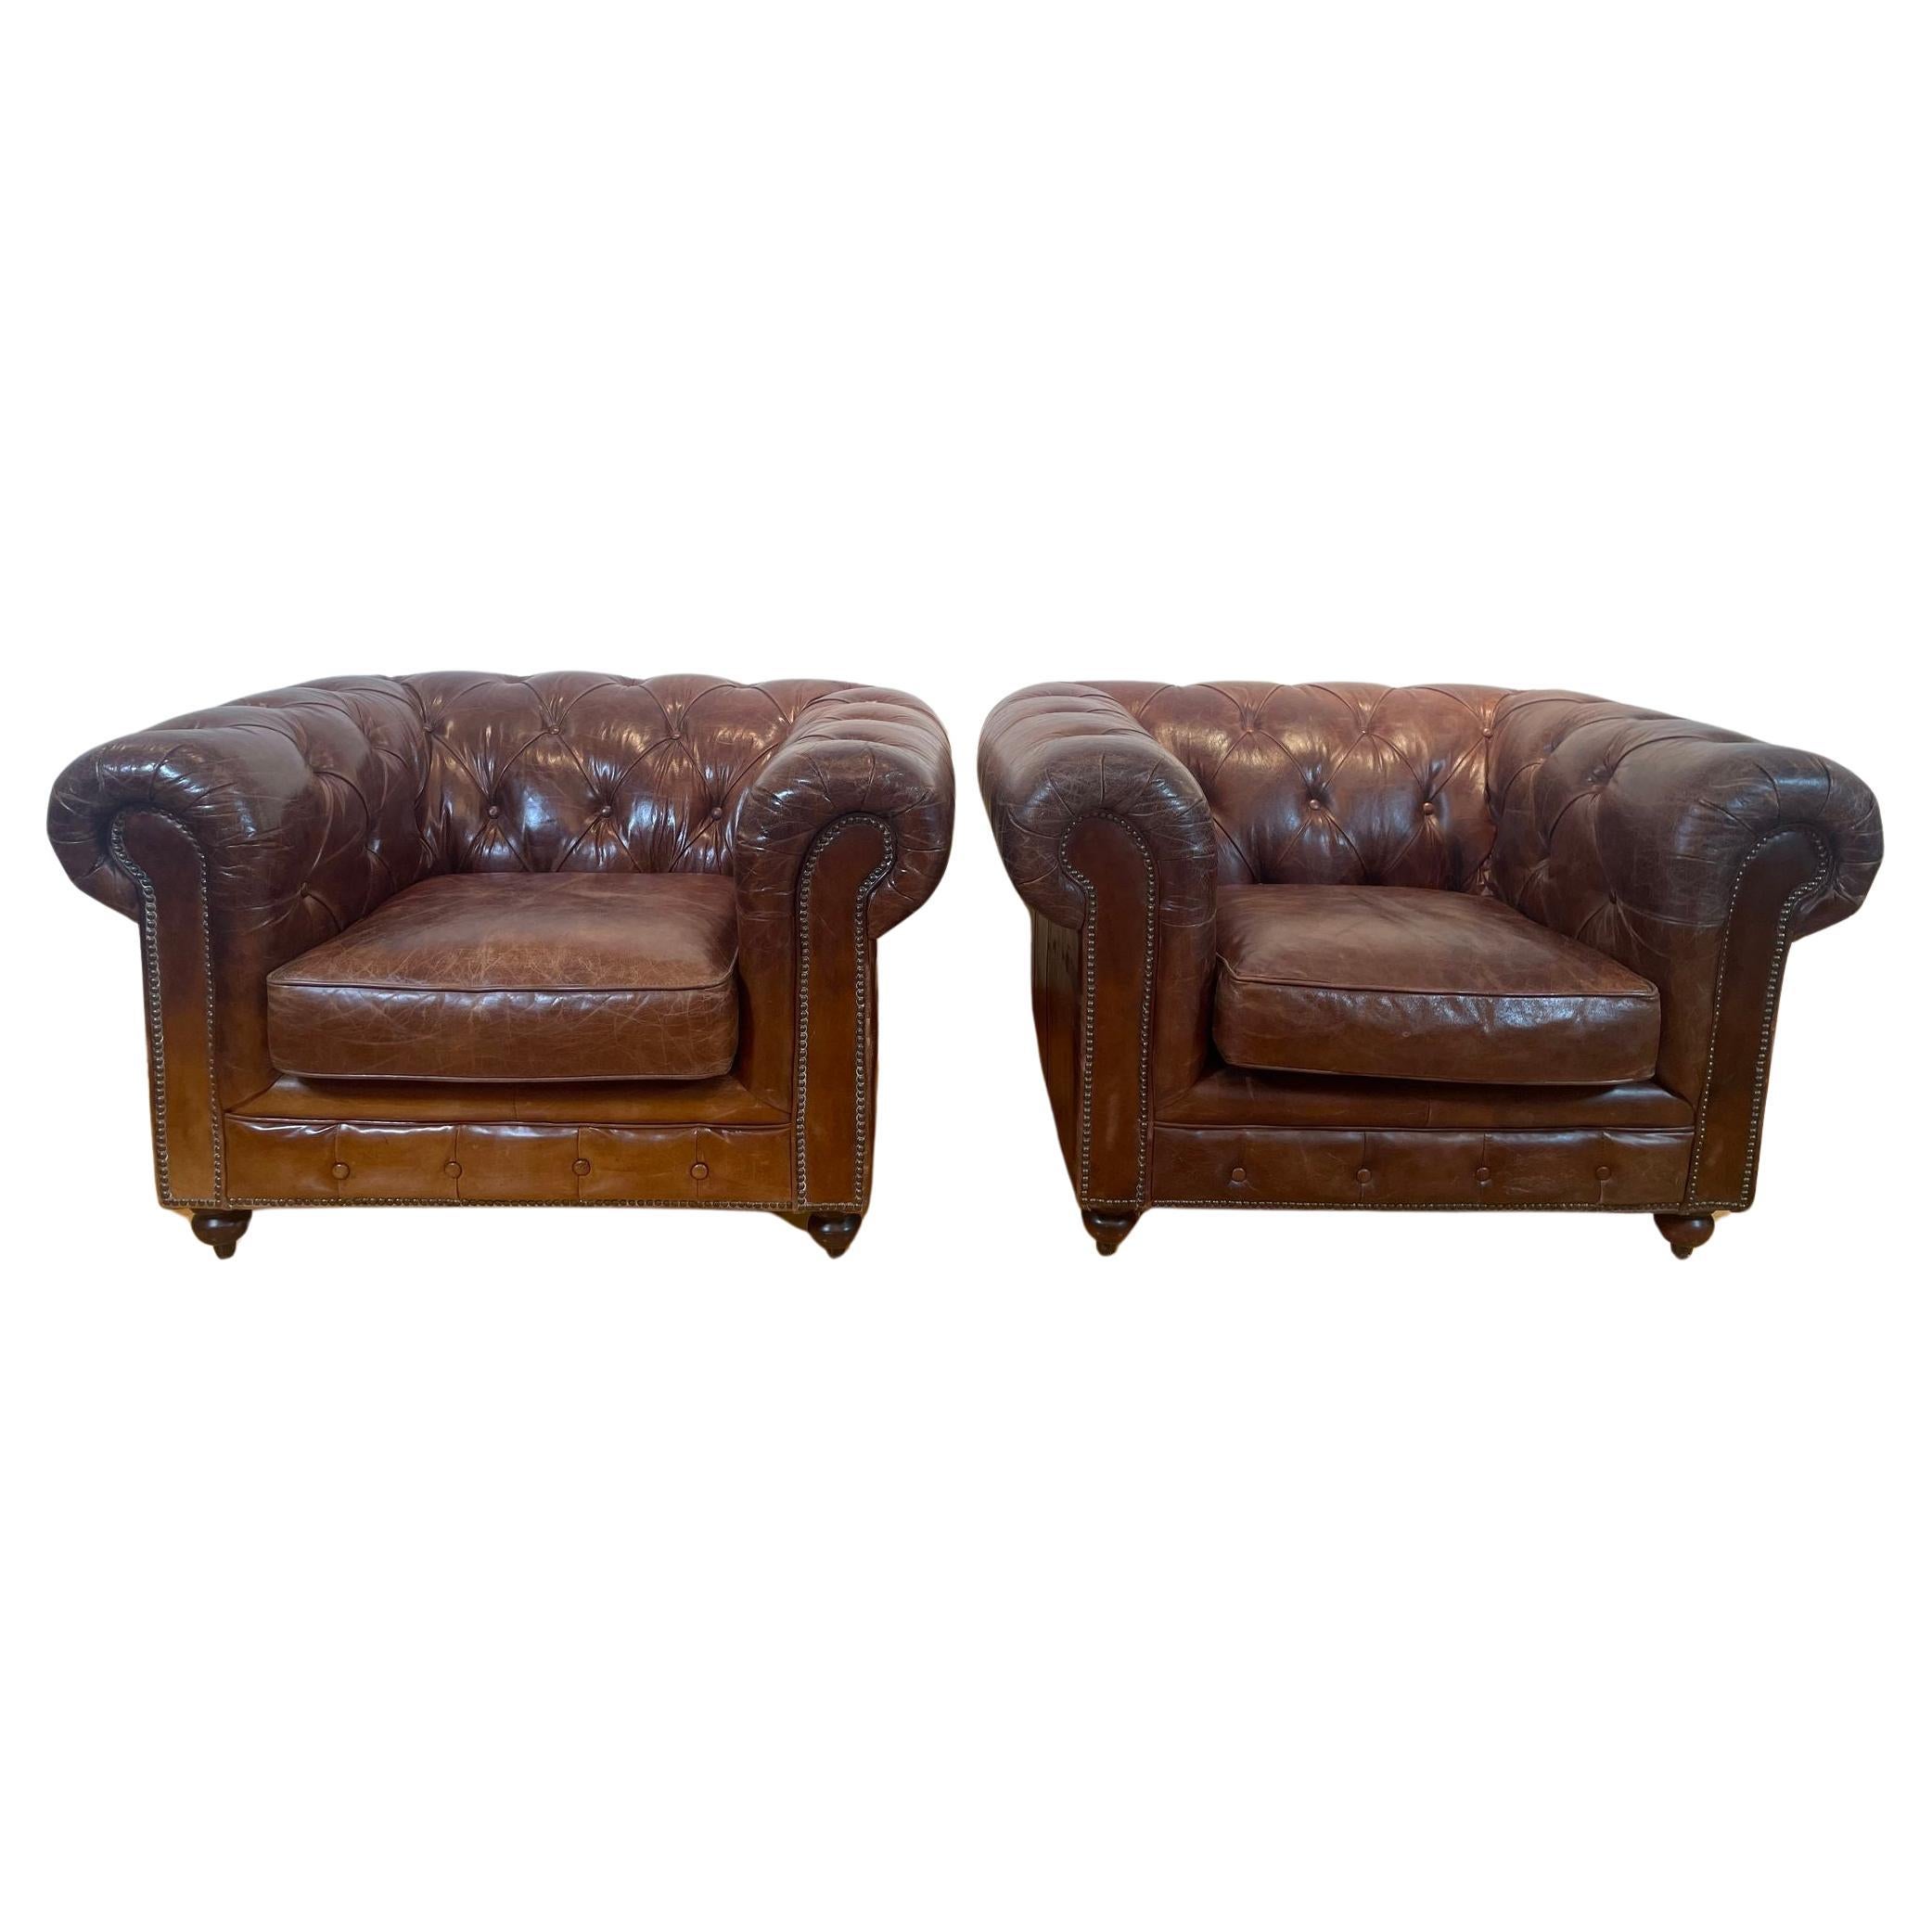 Vintage English Brown Leder getuftet Chesterfield Club Sessel ein Paar